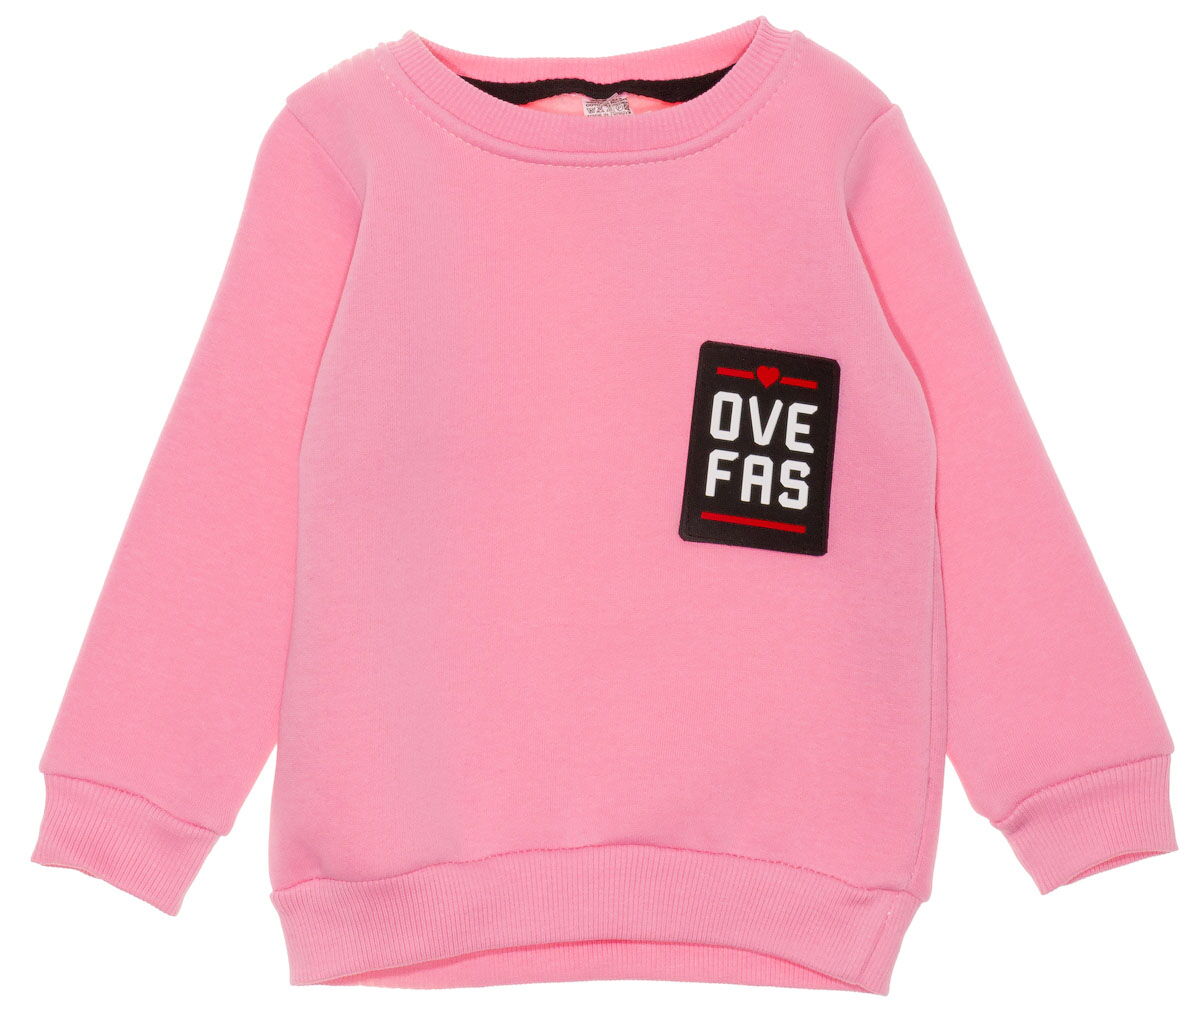 Утепленный реглан для девочки OveFas розовый 2019 - цена